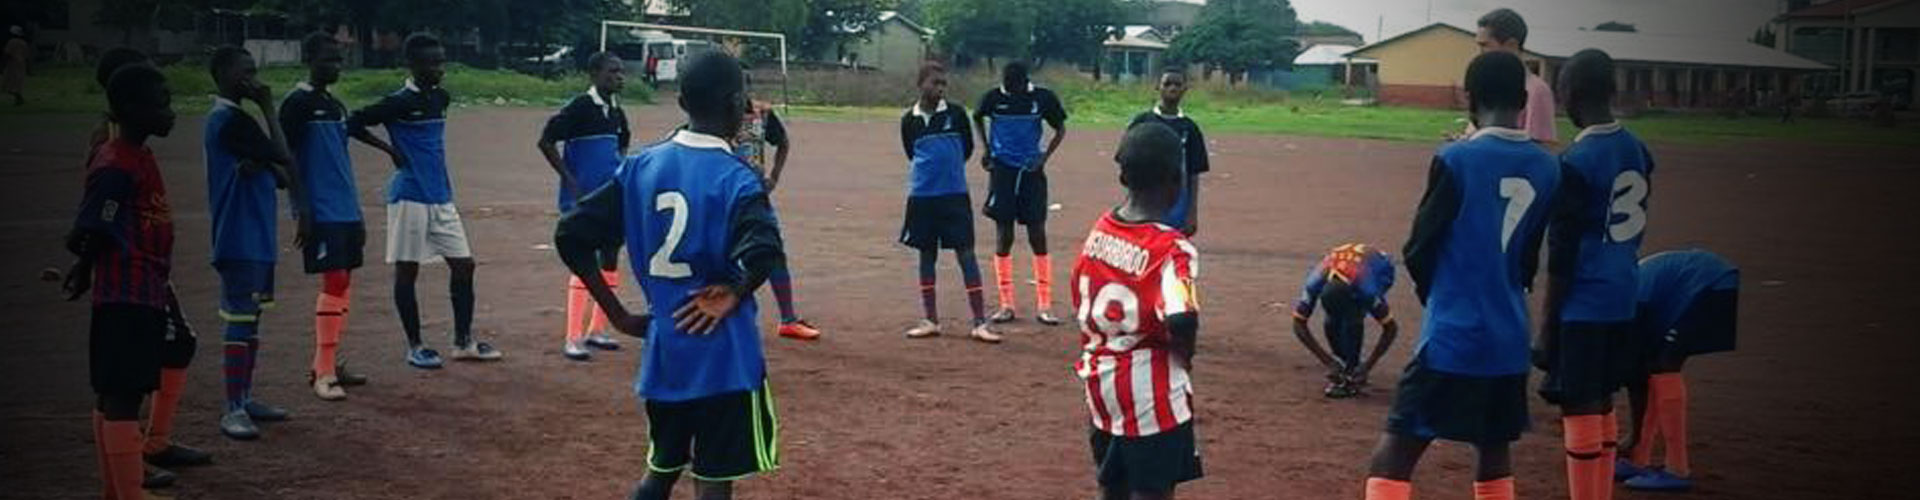 Sports Volunteering in Ghana | Football Coaching